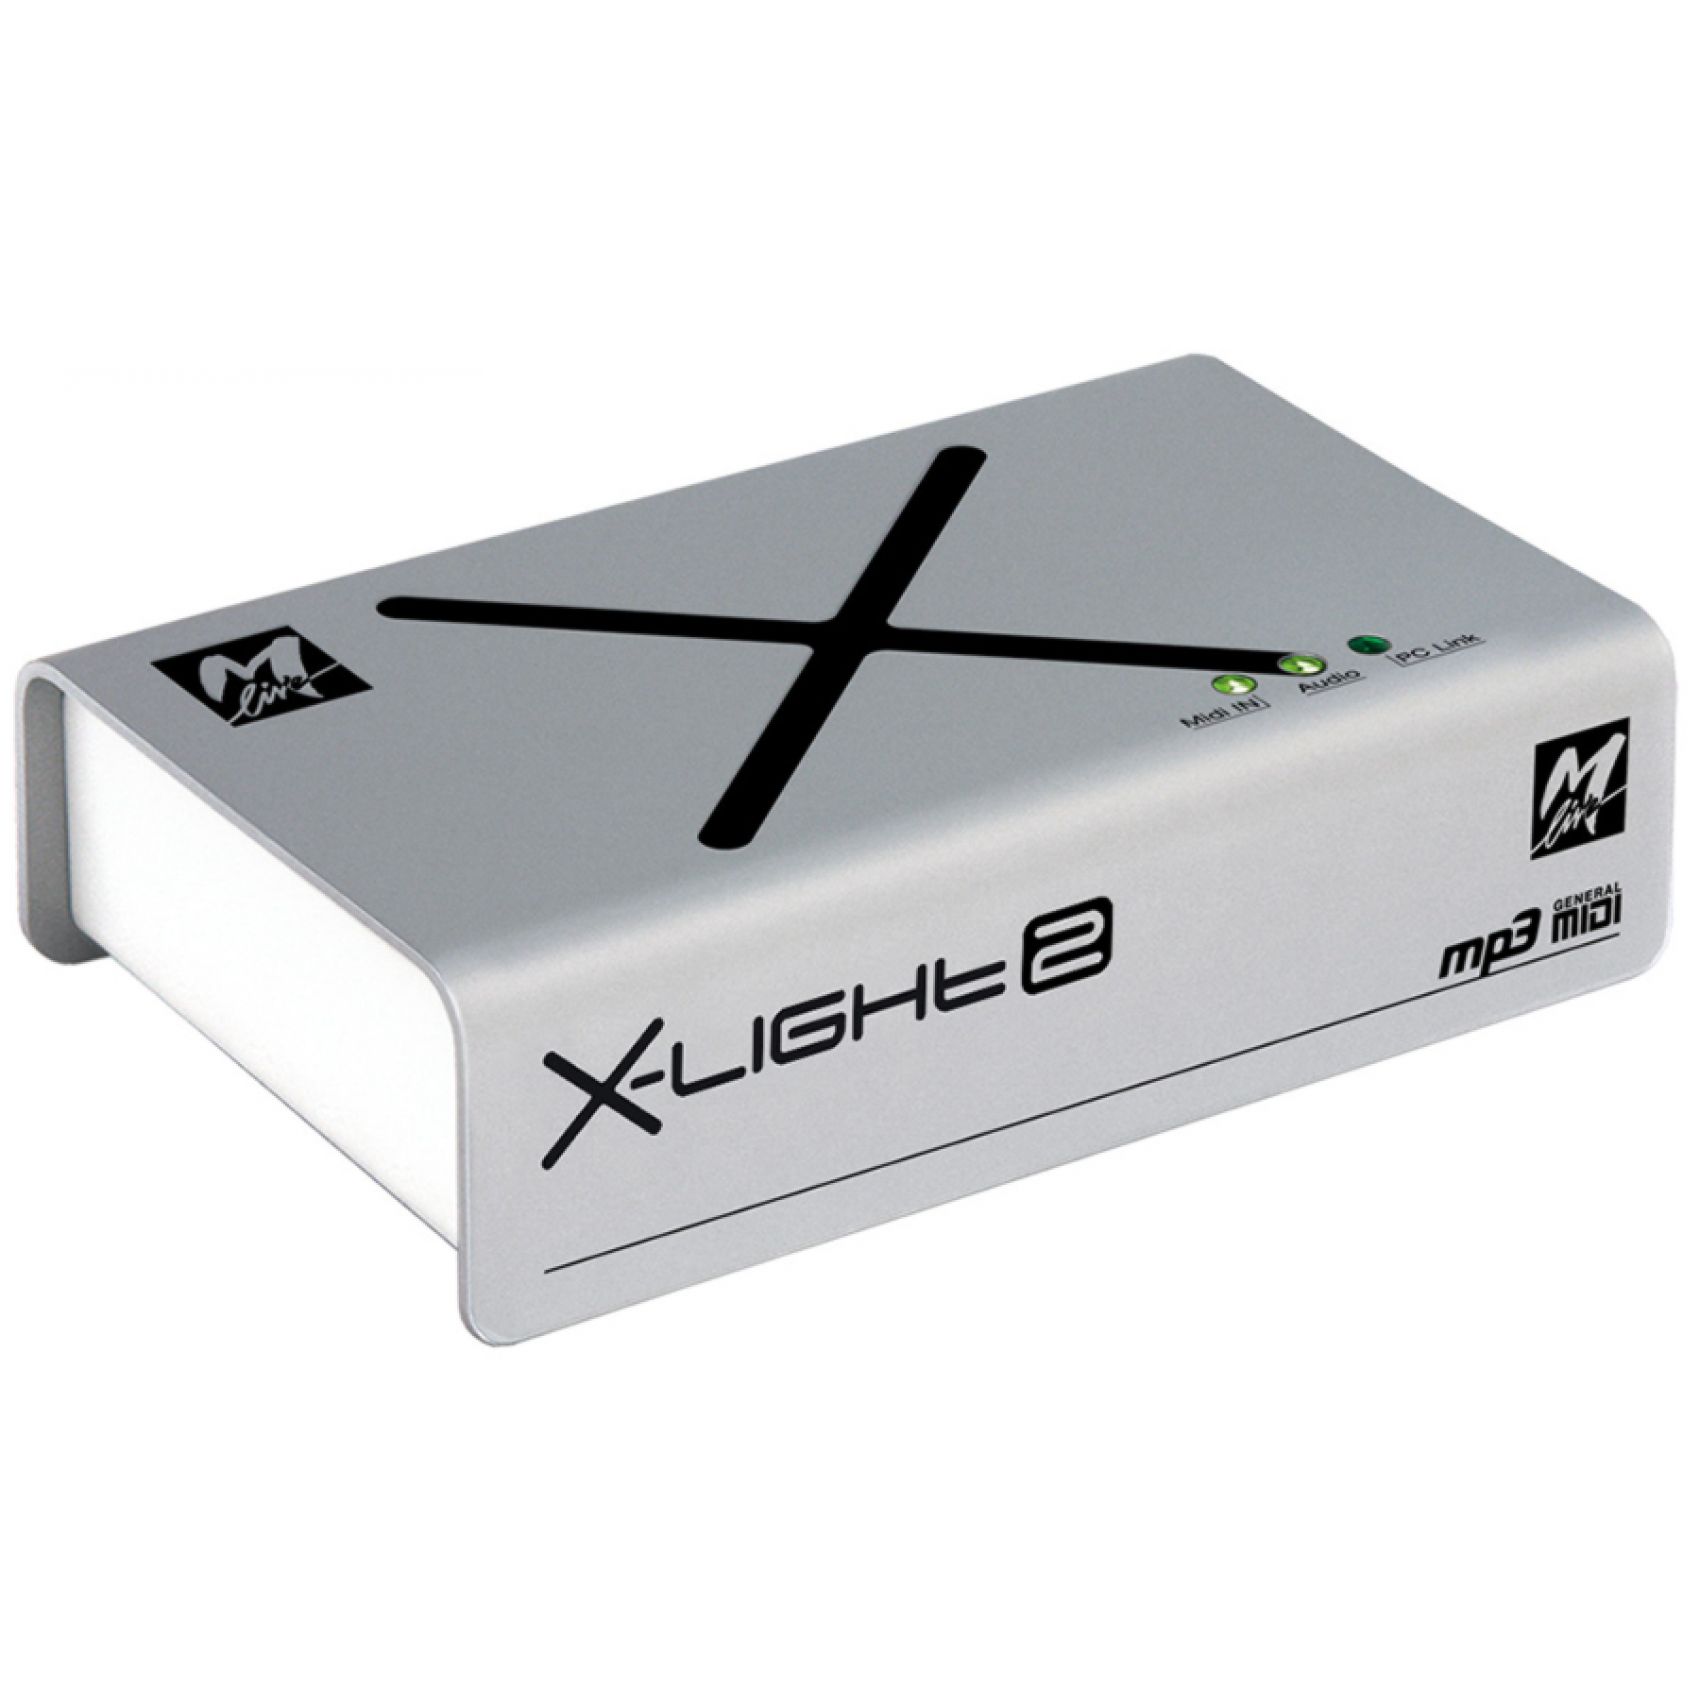 M-LIVE X-LIGHt 2 - Compatibile per Ipad